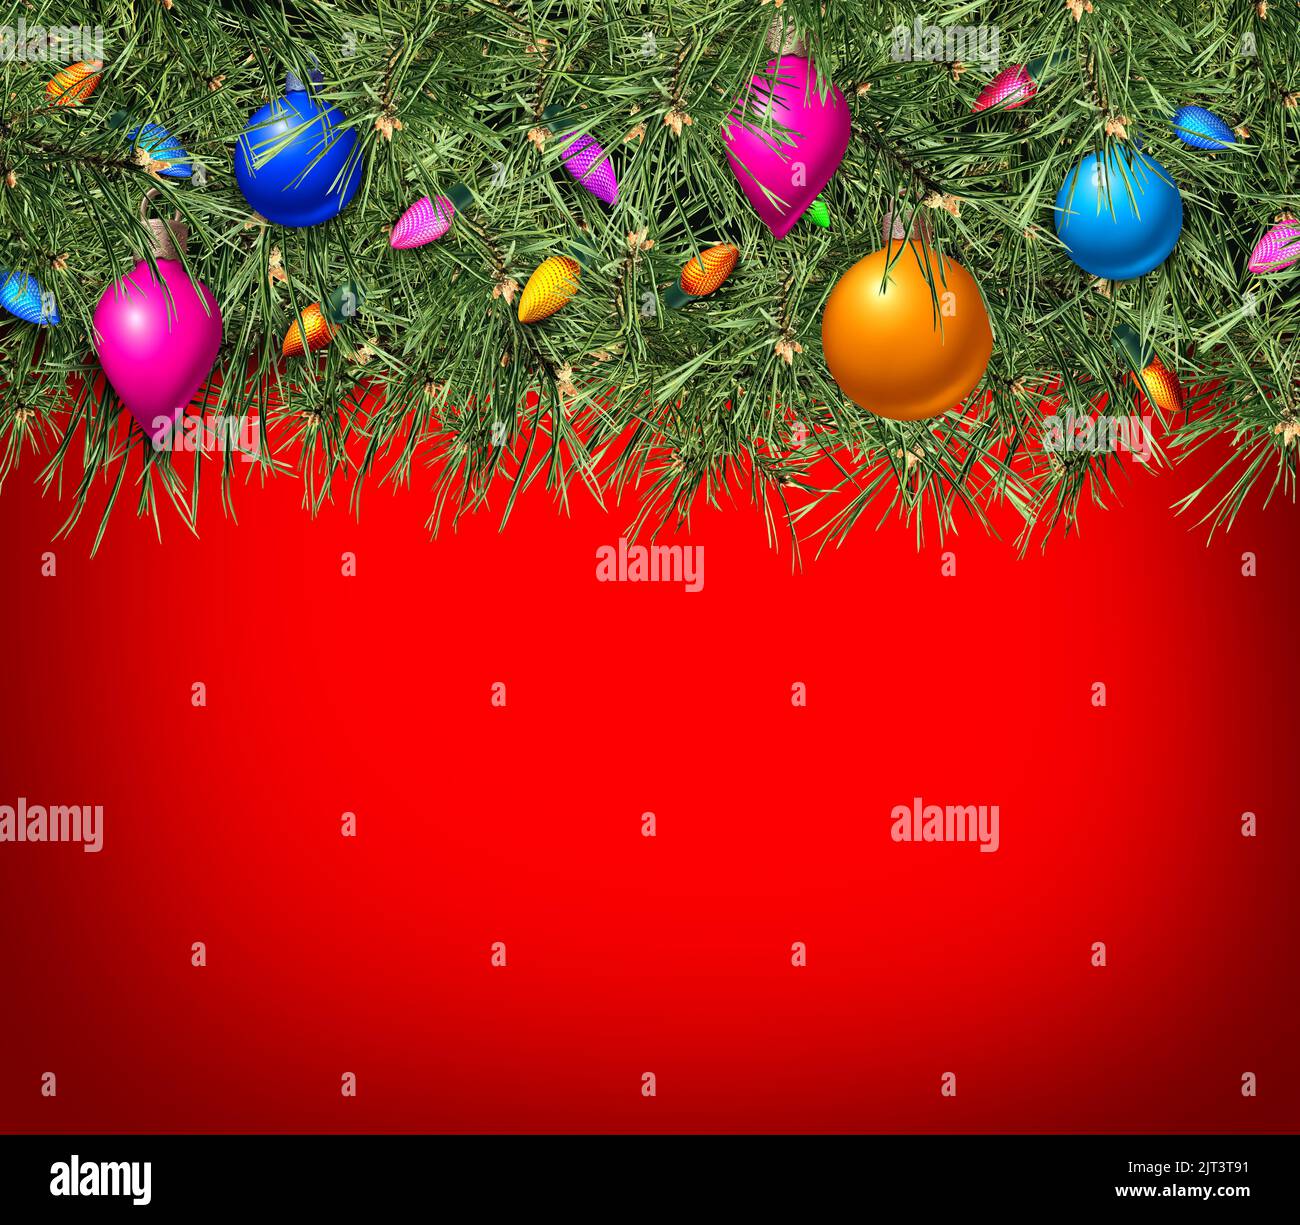 Weihnachtsfeiertag roter Hintergrund mit immergrüner Kiefer und Winterfest x-0mas Ornamente mit Textbereich als festliche saisonale Promotion Stockfoto